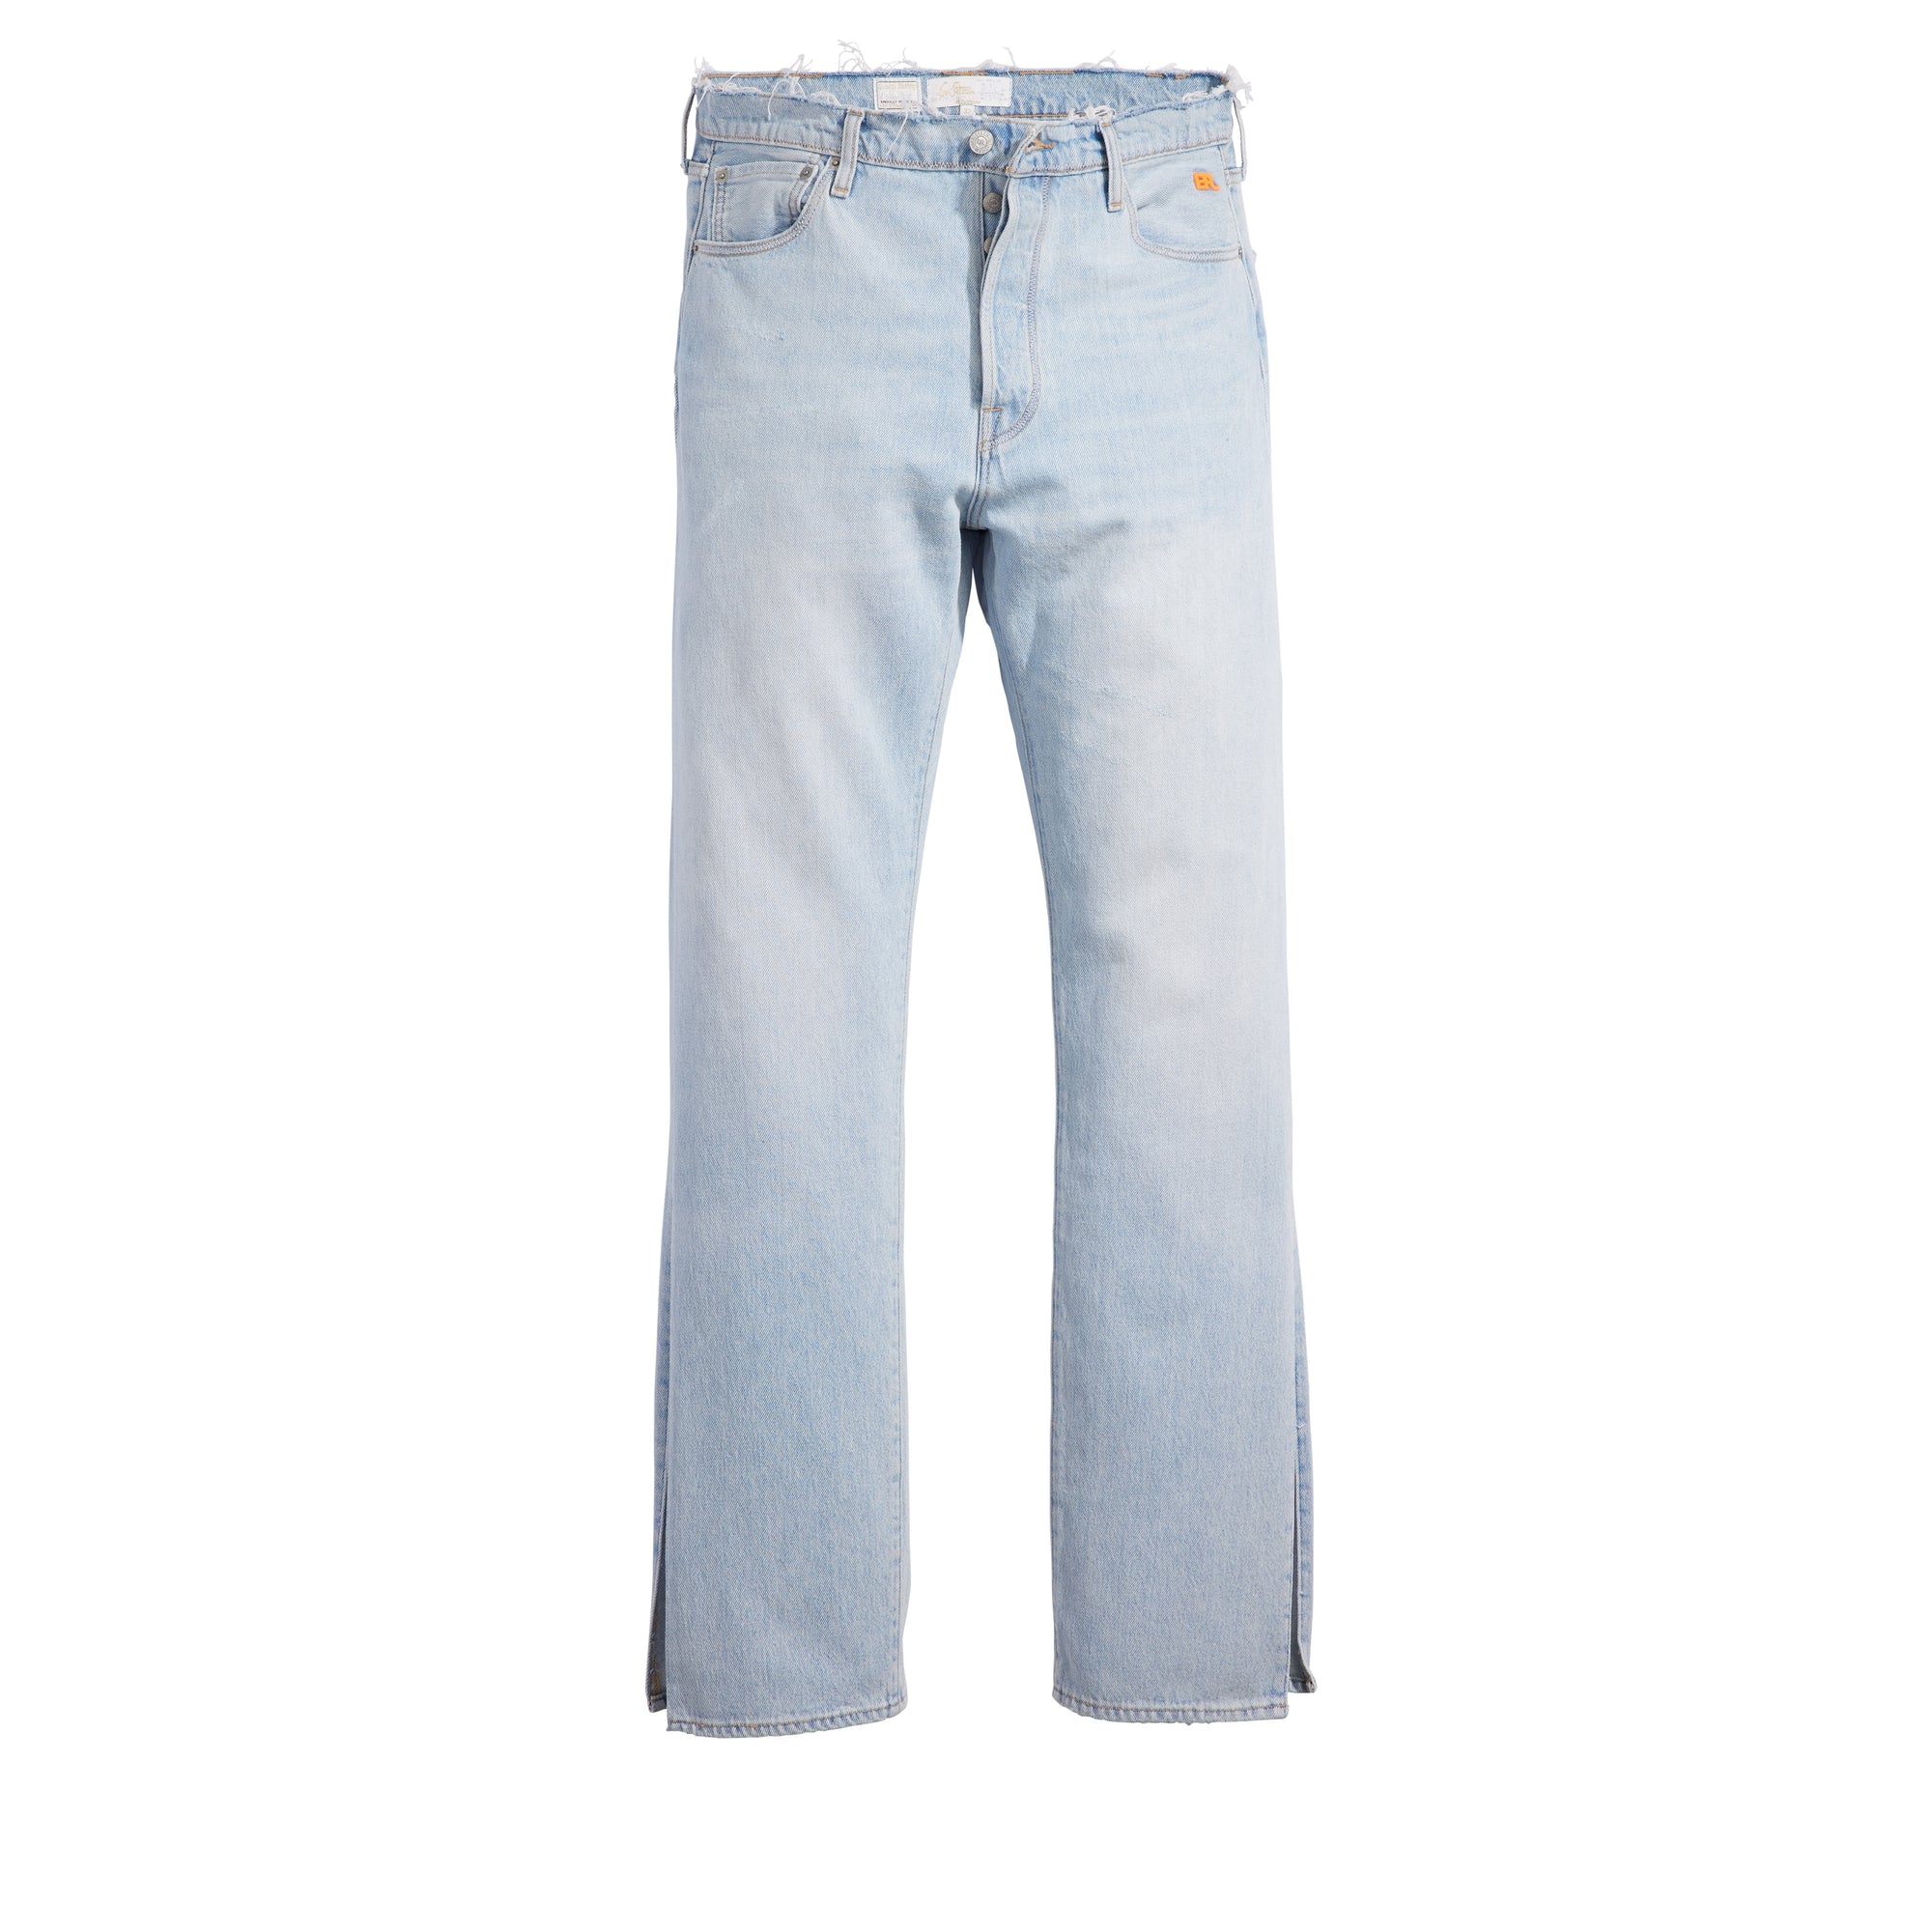 ERL - Levi’s 501 Denim Jeans - (Blue) view 1